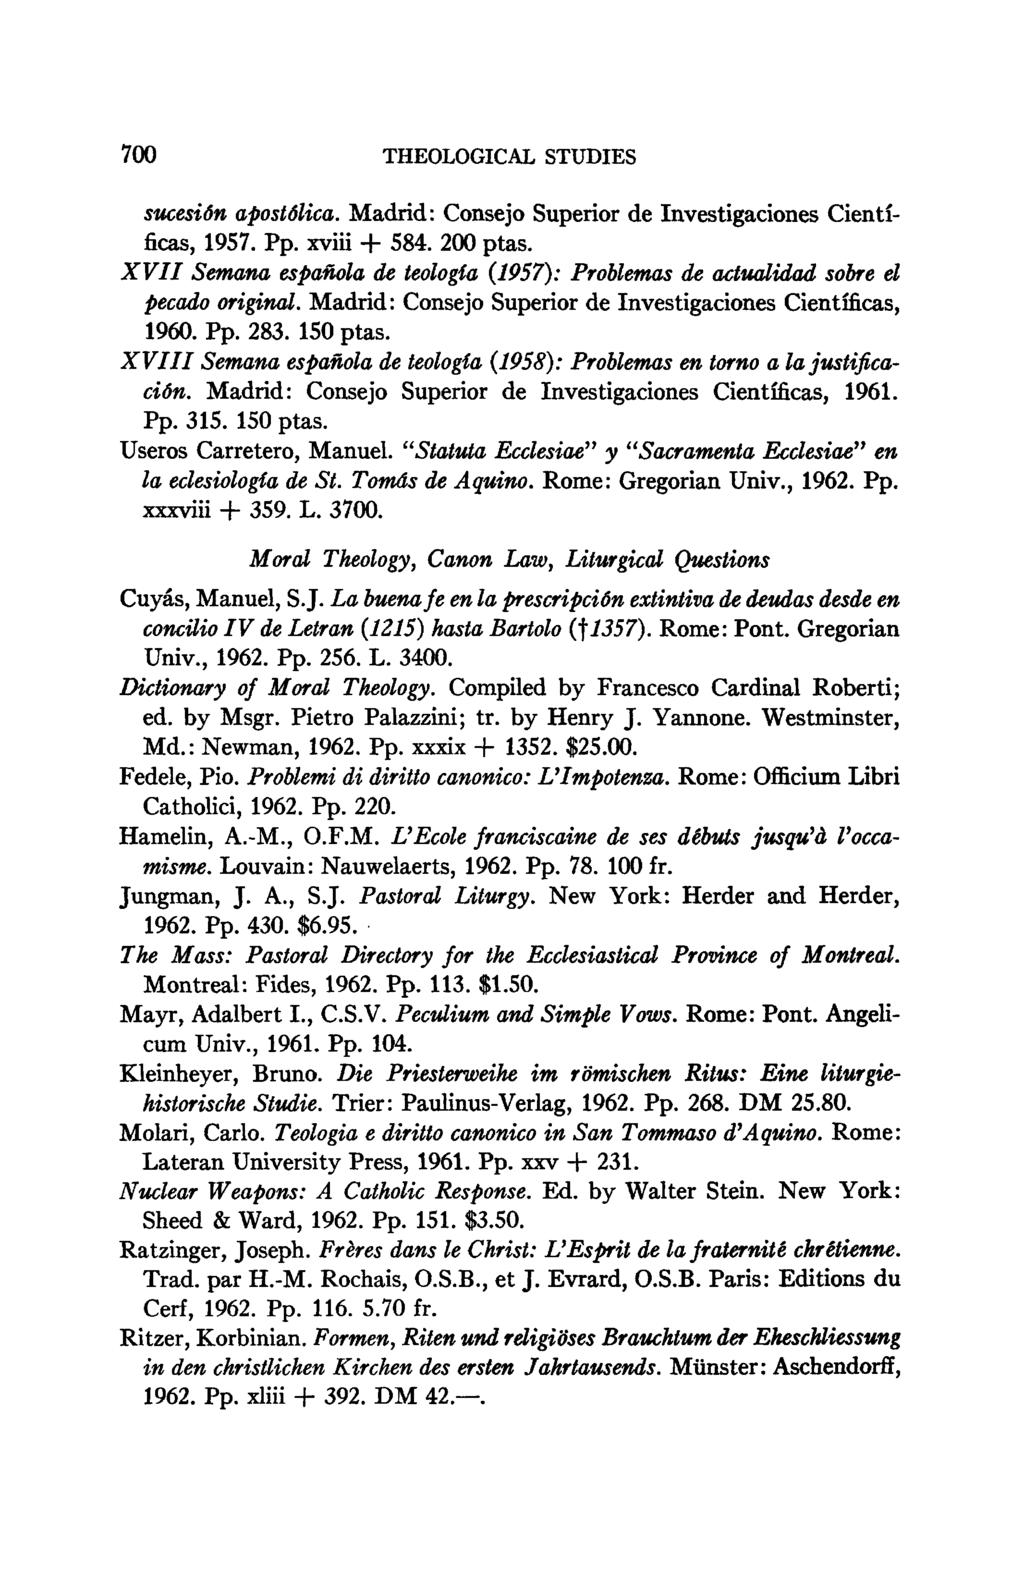 700 THEOLOGICAL STUDIES sucesión apostólica. Madrid: Consejo Superior de Investigaciones Científicas, 1957. Pp. xviii + 584. 200 ptas.